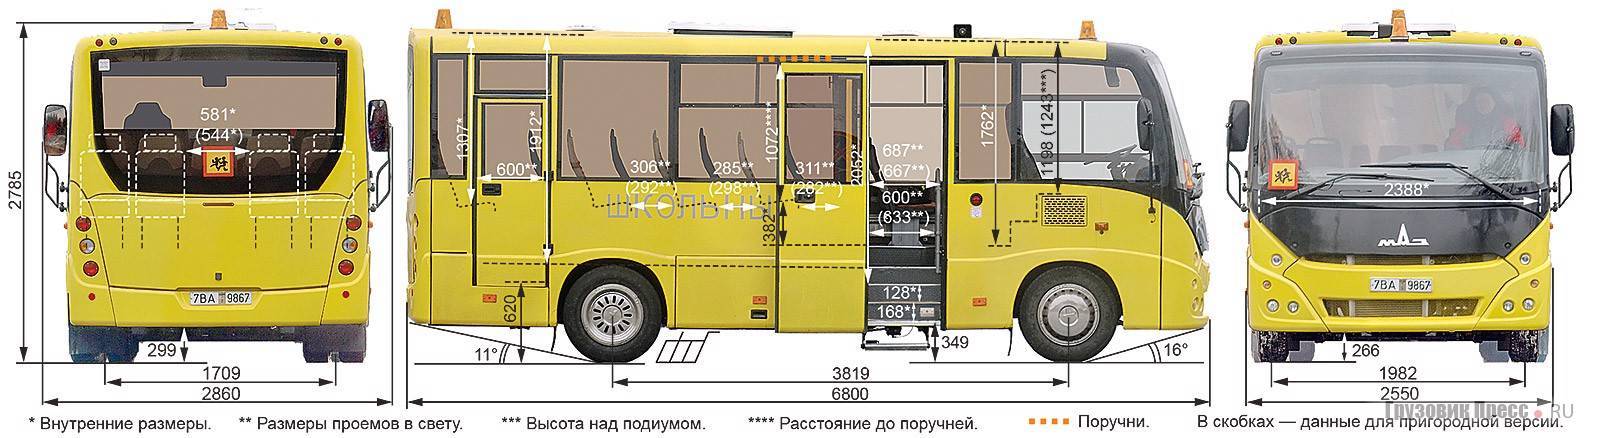 Автобус маз 206, маз 226. мануал - часть 2